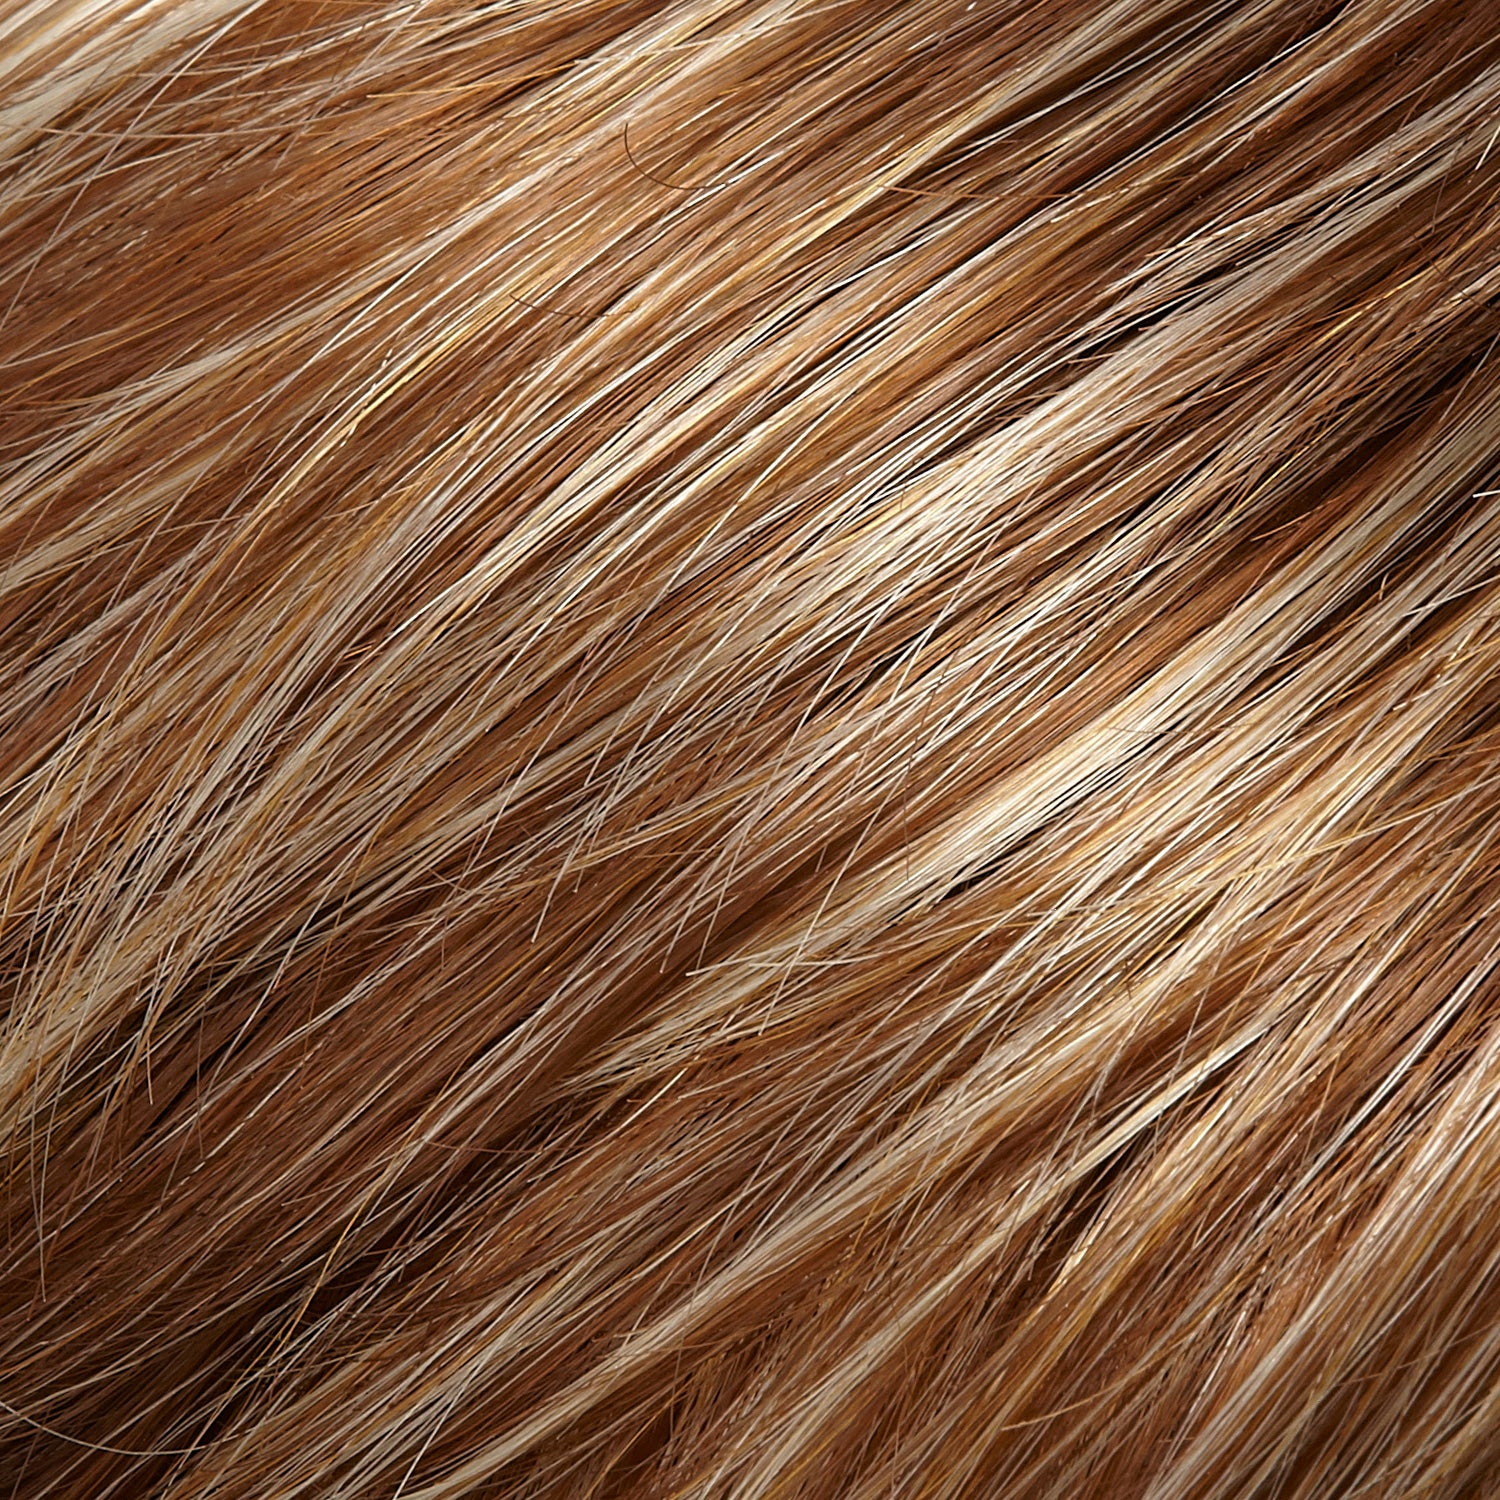 Perruque Cheveux Synthetiques Avec Mèches Jon Renau Kris Couleur fs26-31